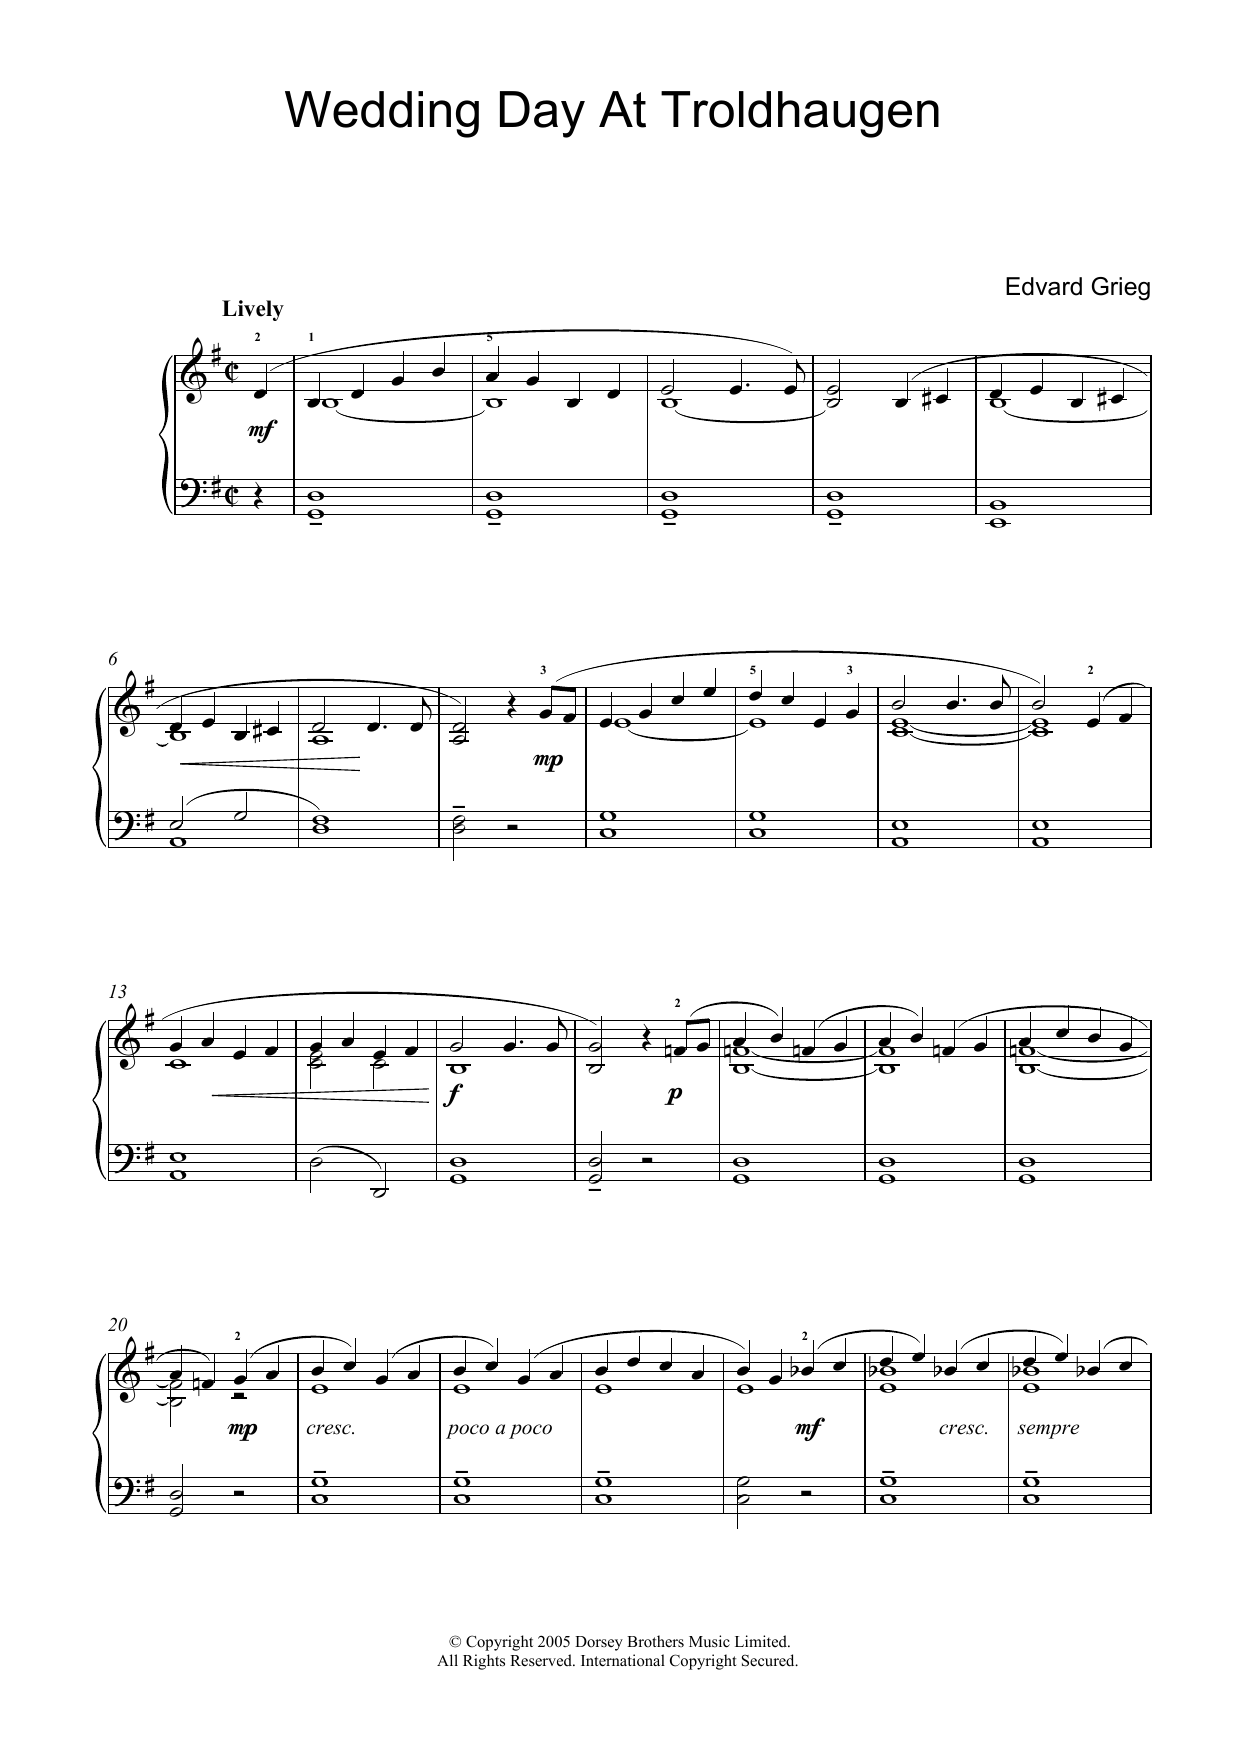 Download Edvard Grieg Wedding Day At Troldhaugen Sheet Music